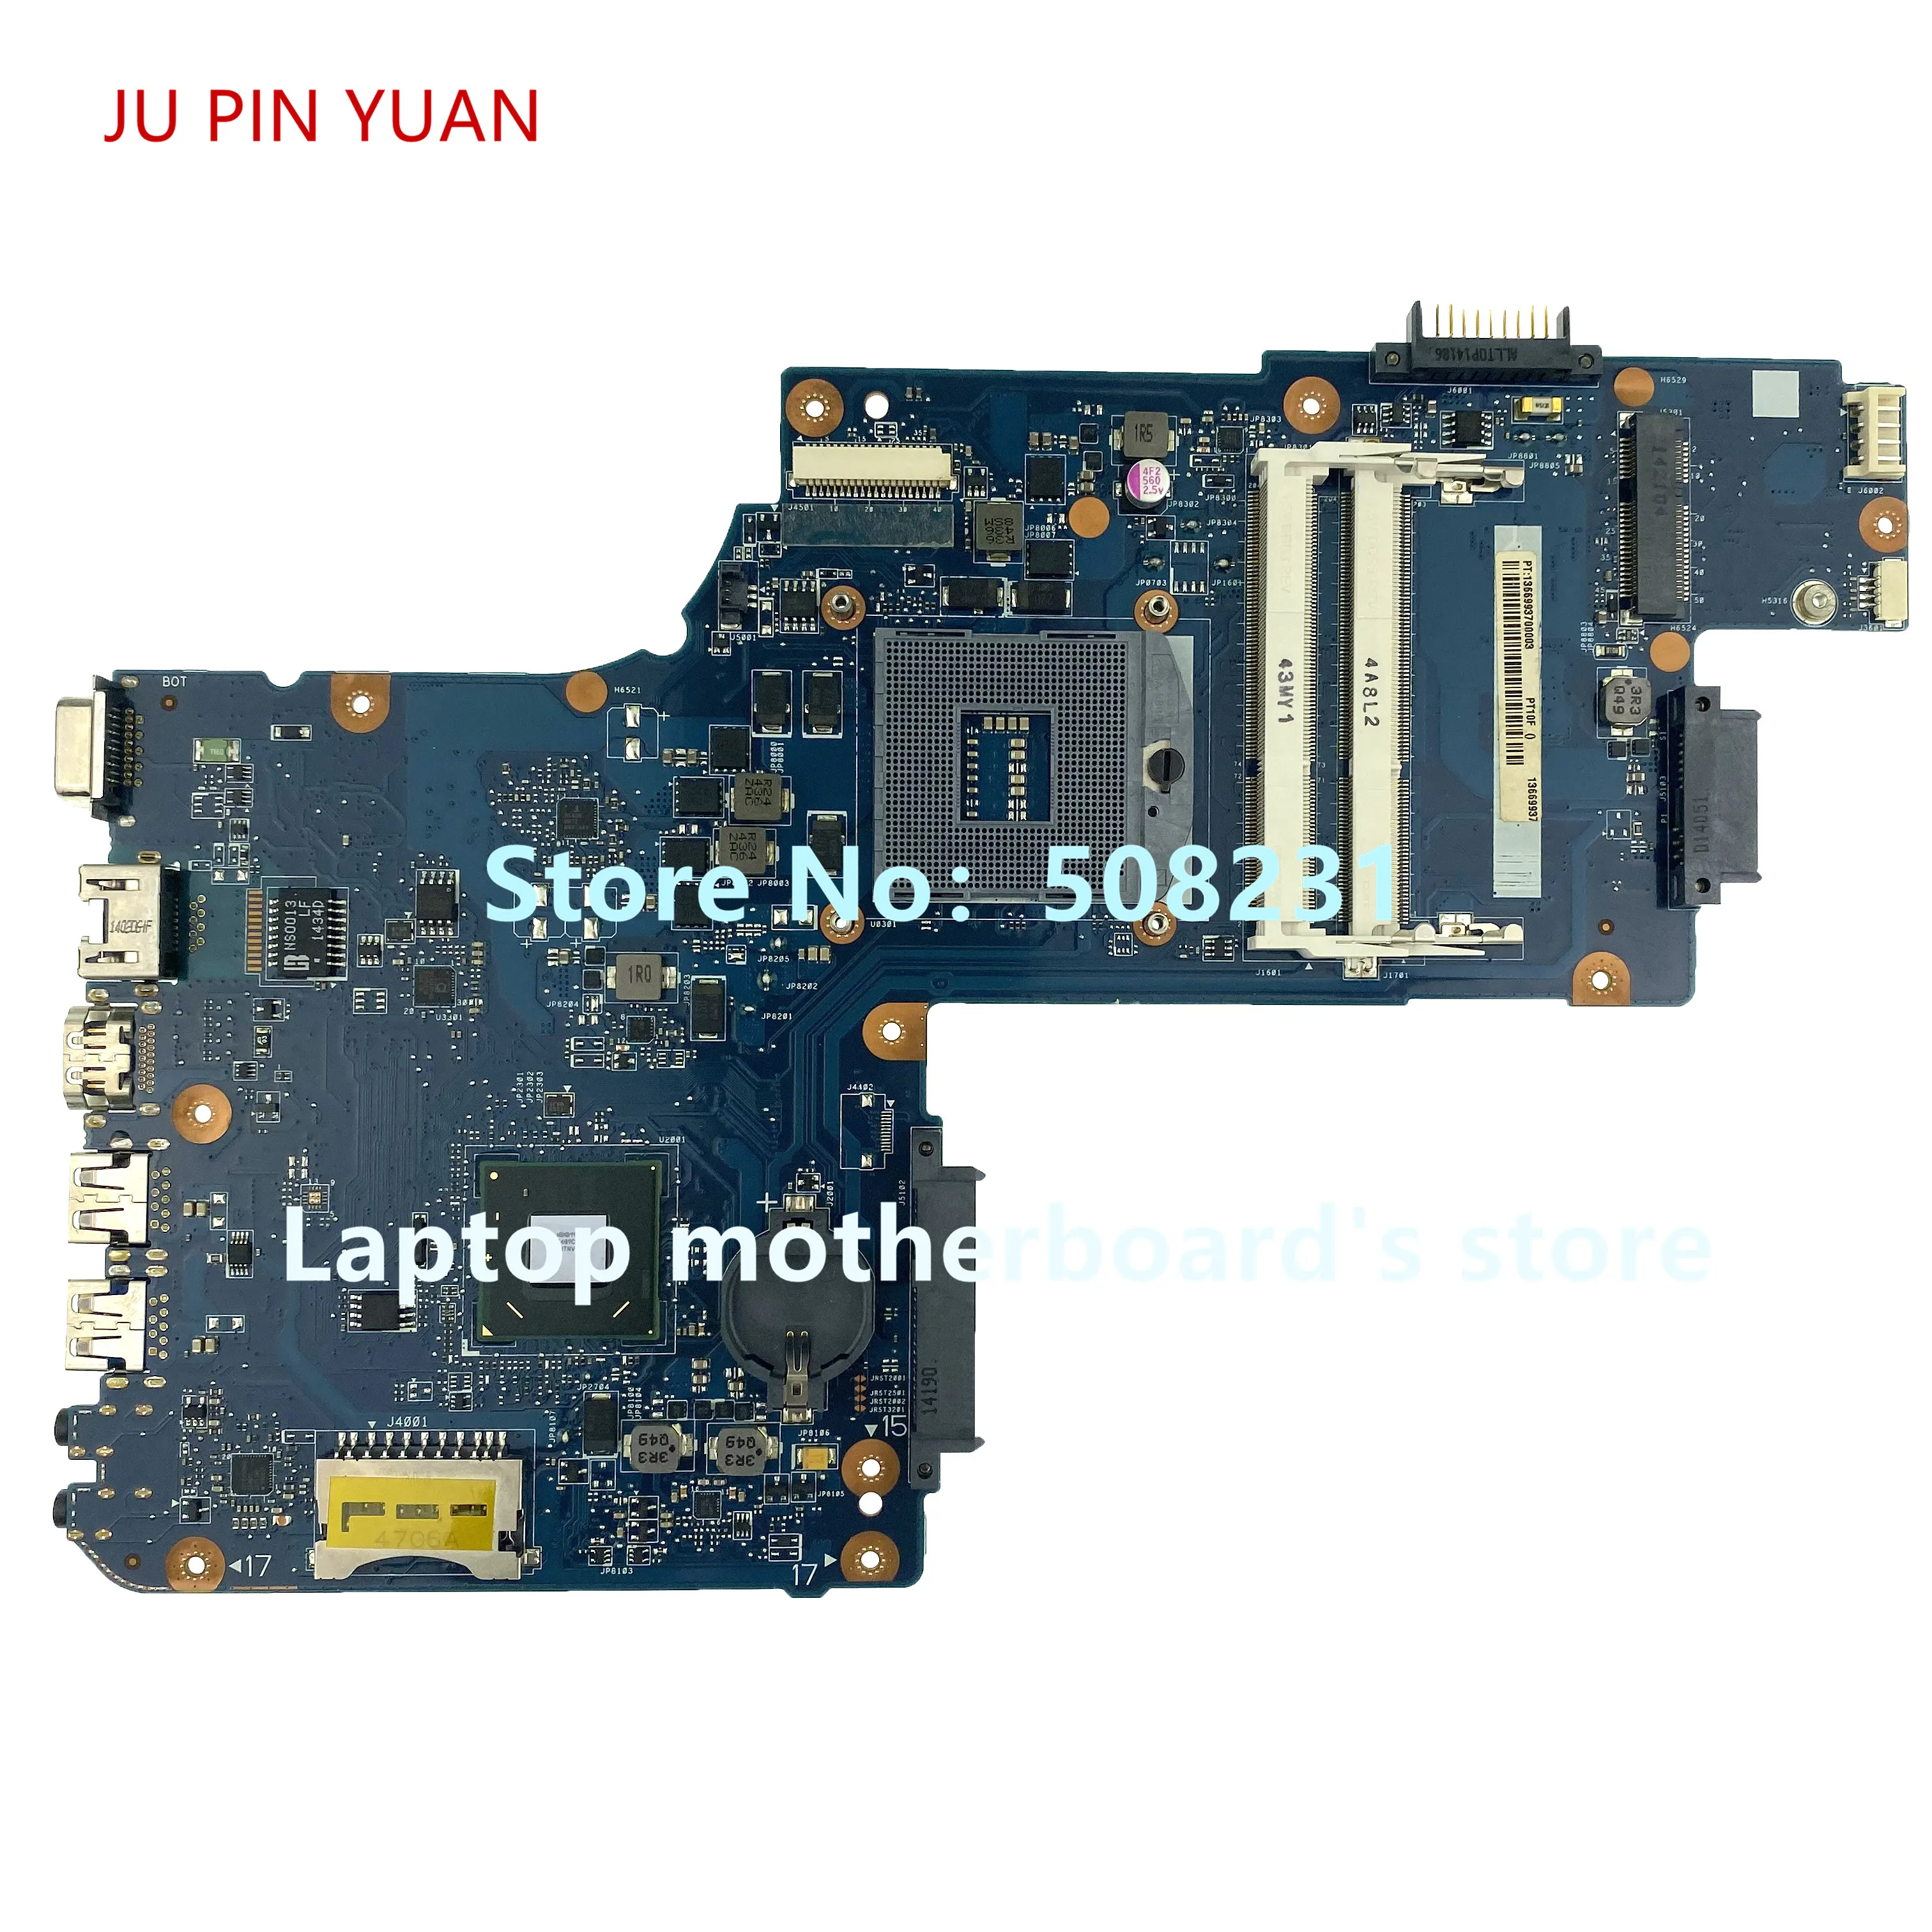 JU PIN de YUANI Pentru Toshiba C50 C55 C50-Un C55-Un Laptop placa de baza H000061920 SLJ8E HM76 testat pe deplin